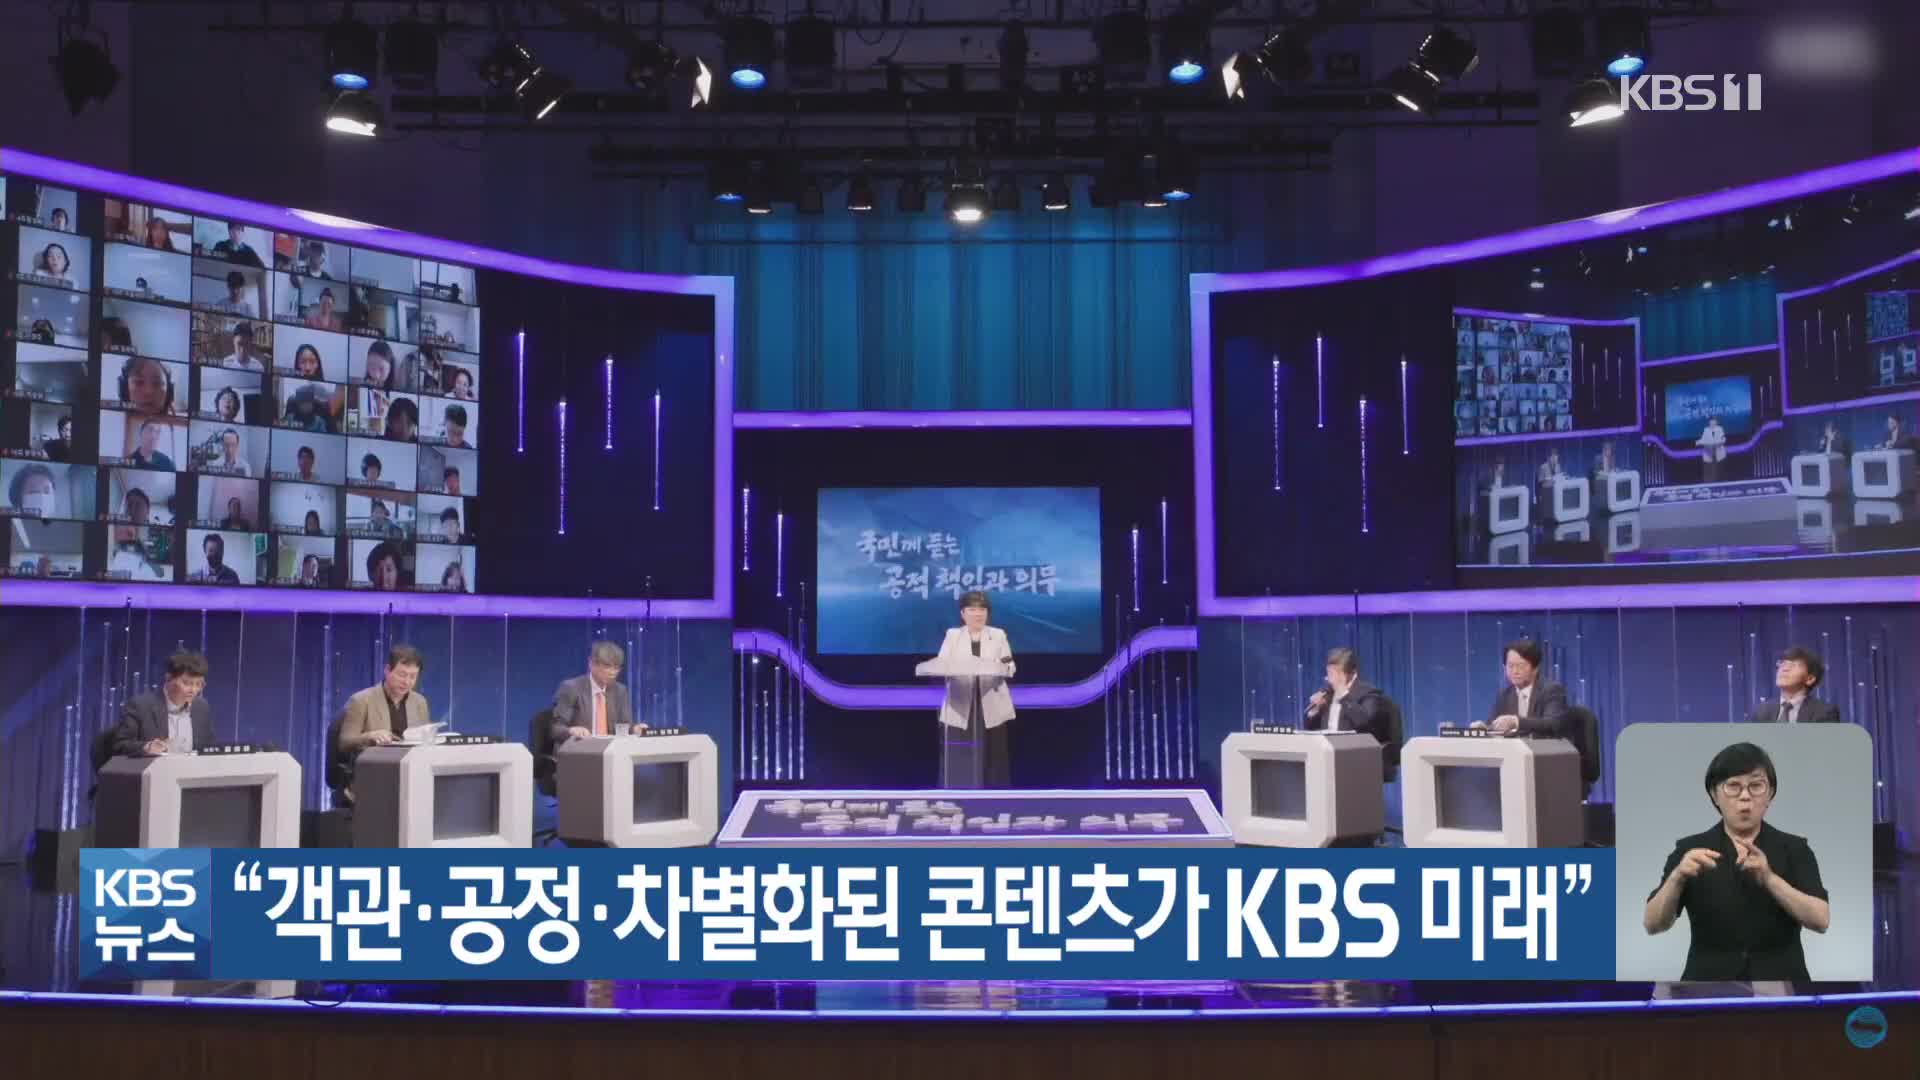 “객관·공정·차별화된 콘텐츠가 KBS 미래”